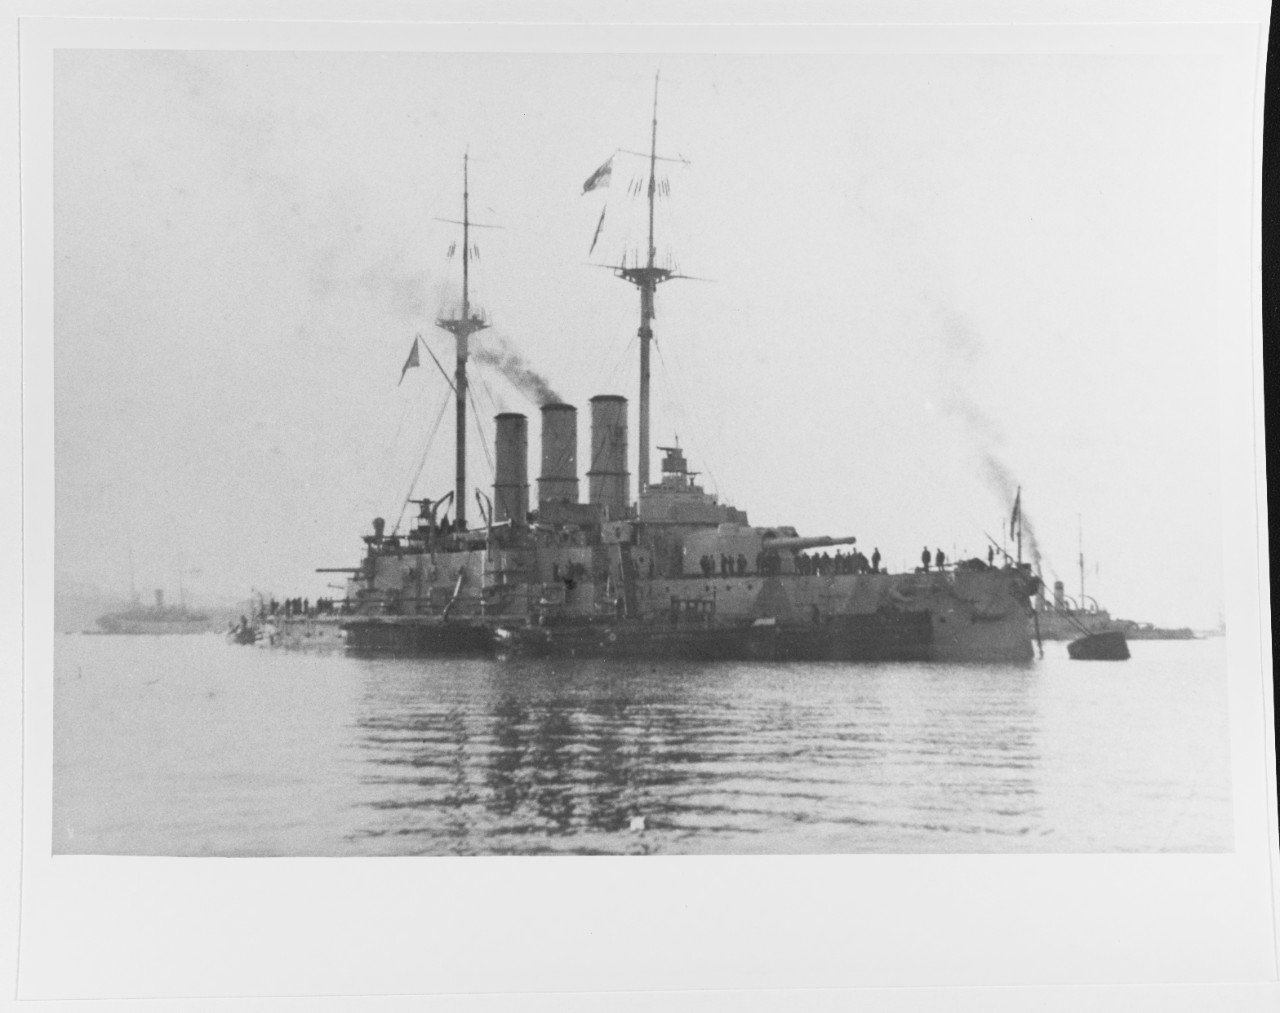 IOANN ZLATOUST (Russian Battleship, 1906-1922)